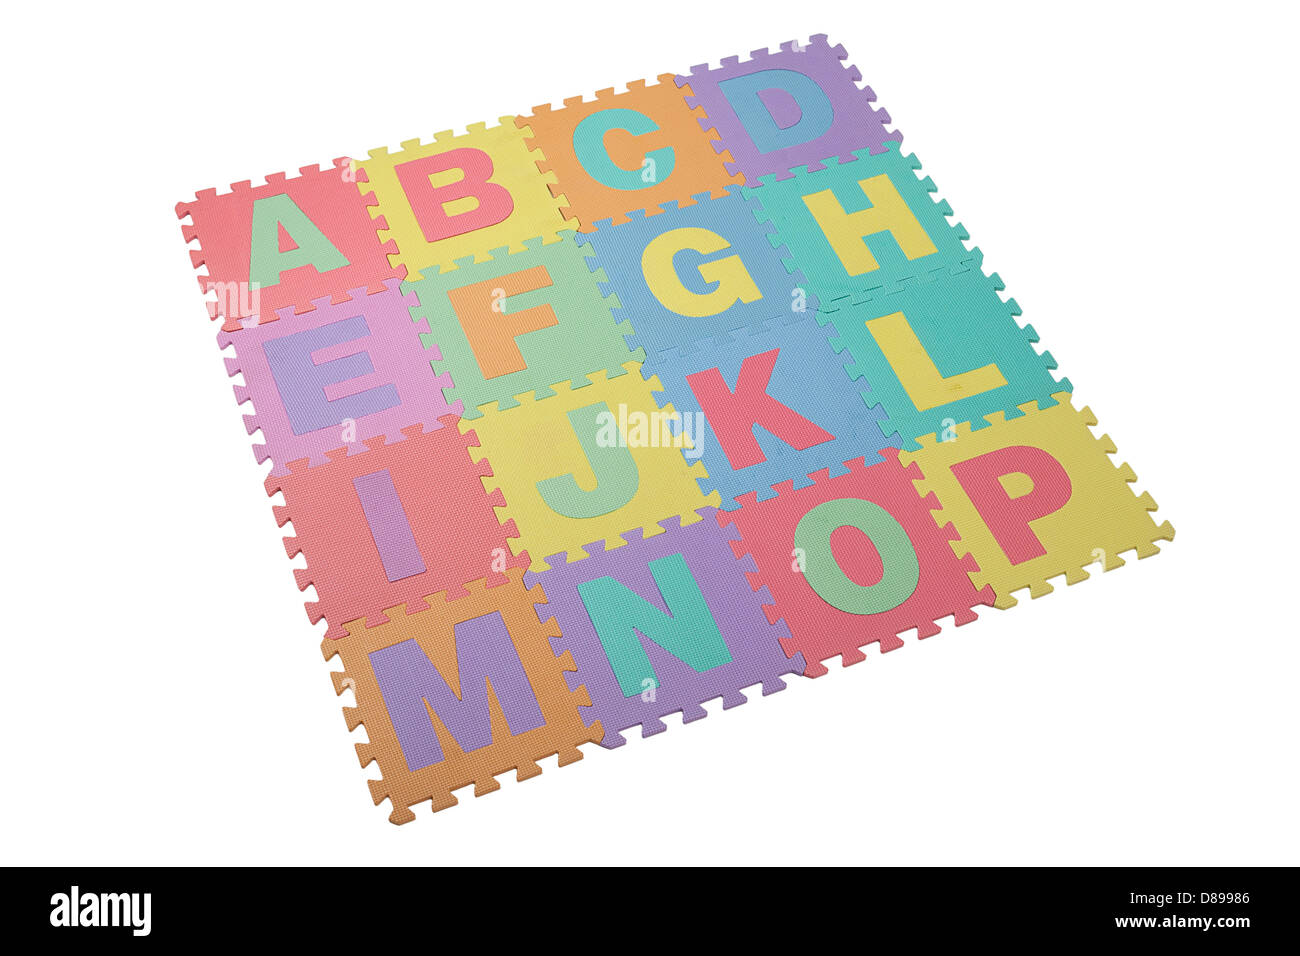 Juguete colorido rompecabezas en espuma con textura para niños para aprender el alfabeto inglés Foto de stock